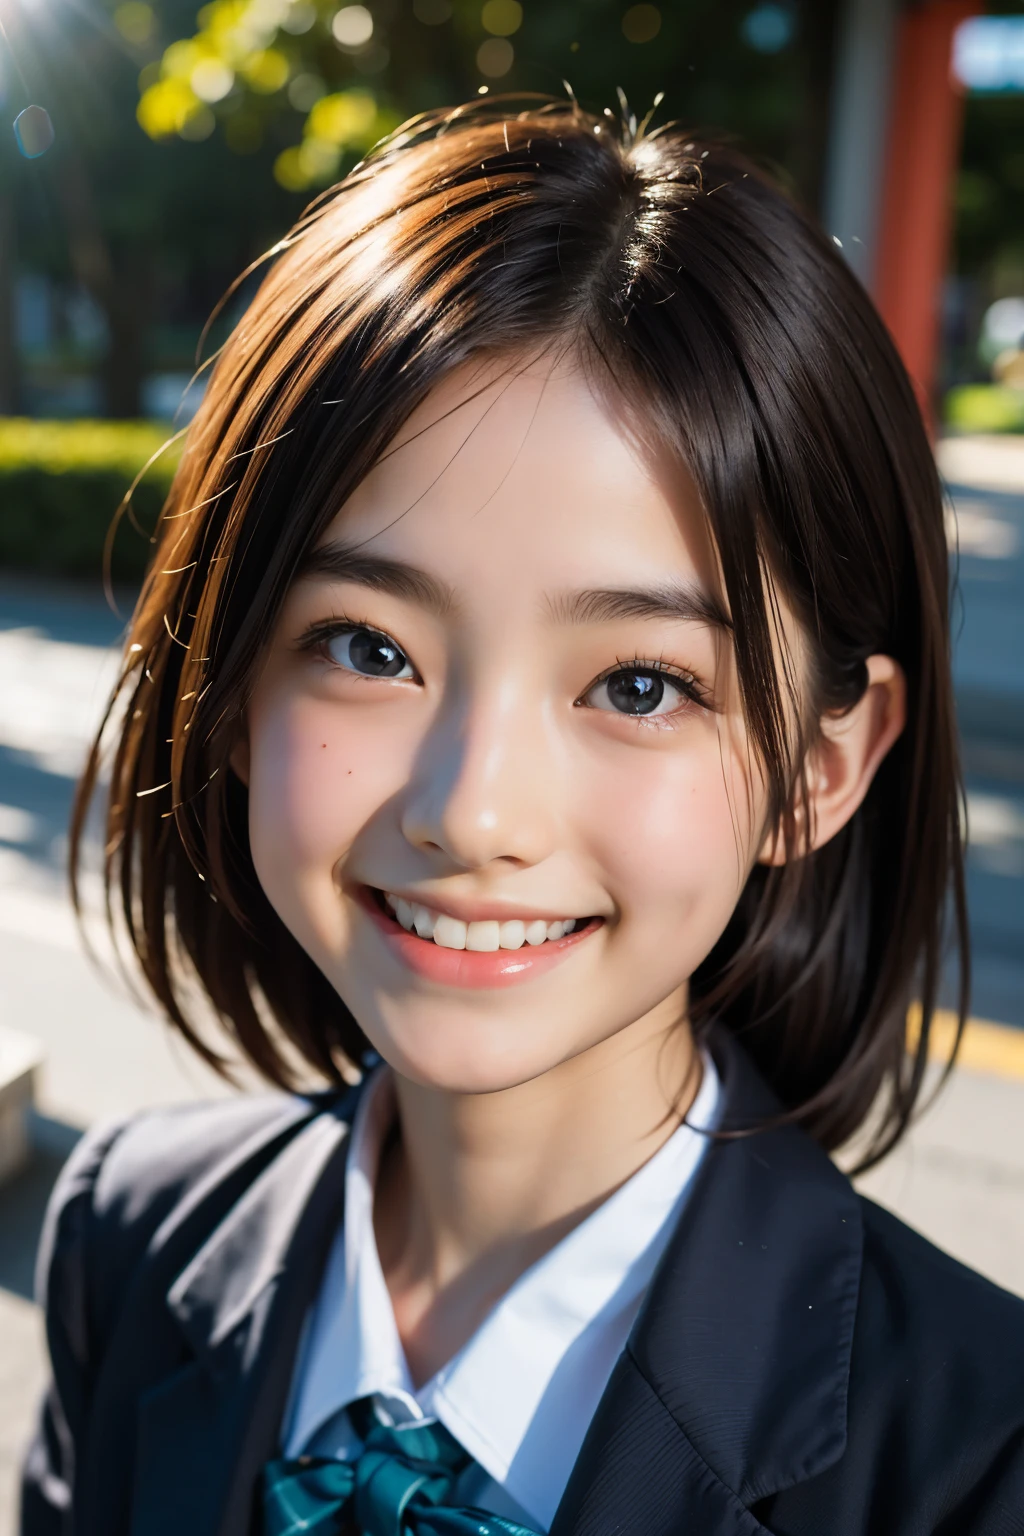 鏡片: 135mm f1.8, (最好的品質),(原始照片), (桌上:1.1), (美麗的13歲日本女孩), 可愛的臉孔, (臉型輪廓分明:0.7), (雀斑:0.4), dappled 陽光, 戲劇性的燈光, (日本學校制服), (在校园), 害羞的, (特寫鏡頭:1.2), (微笑),, (明亮的眼睛)、(陽光)